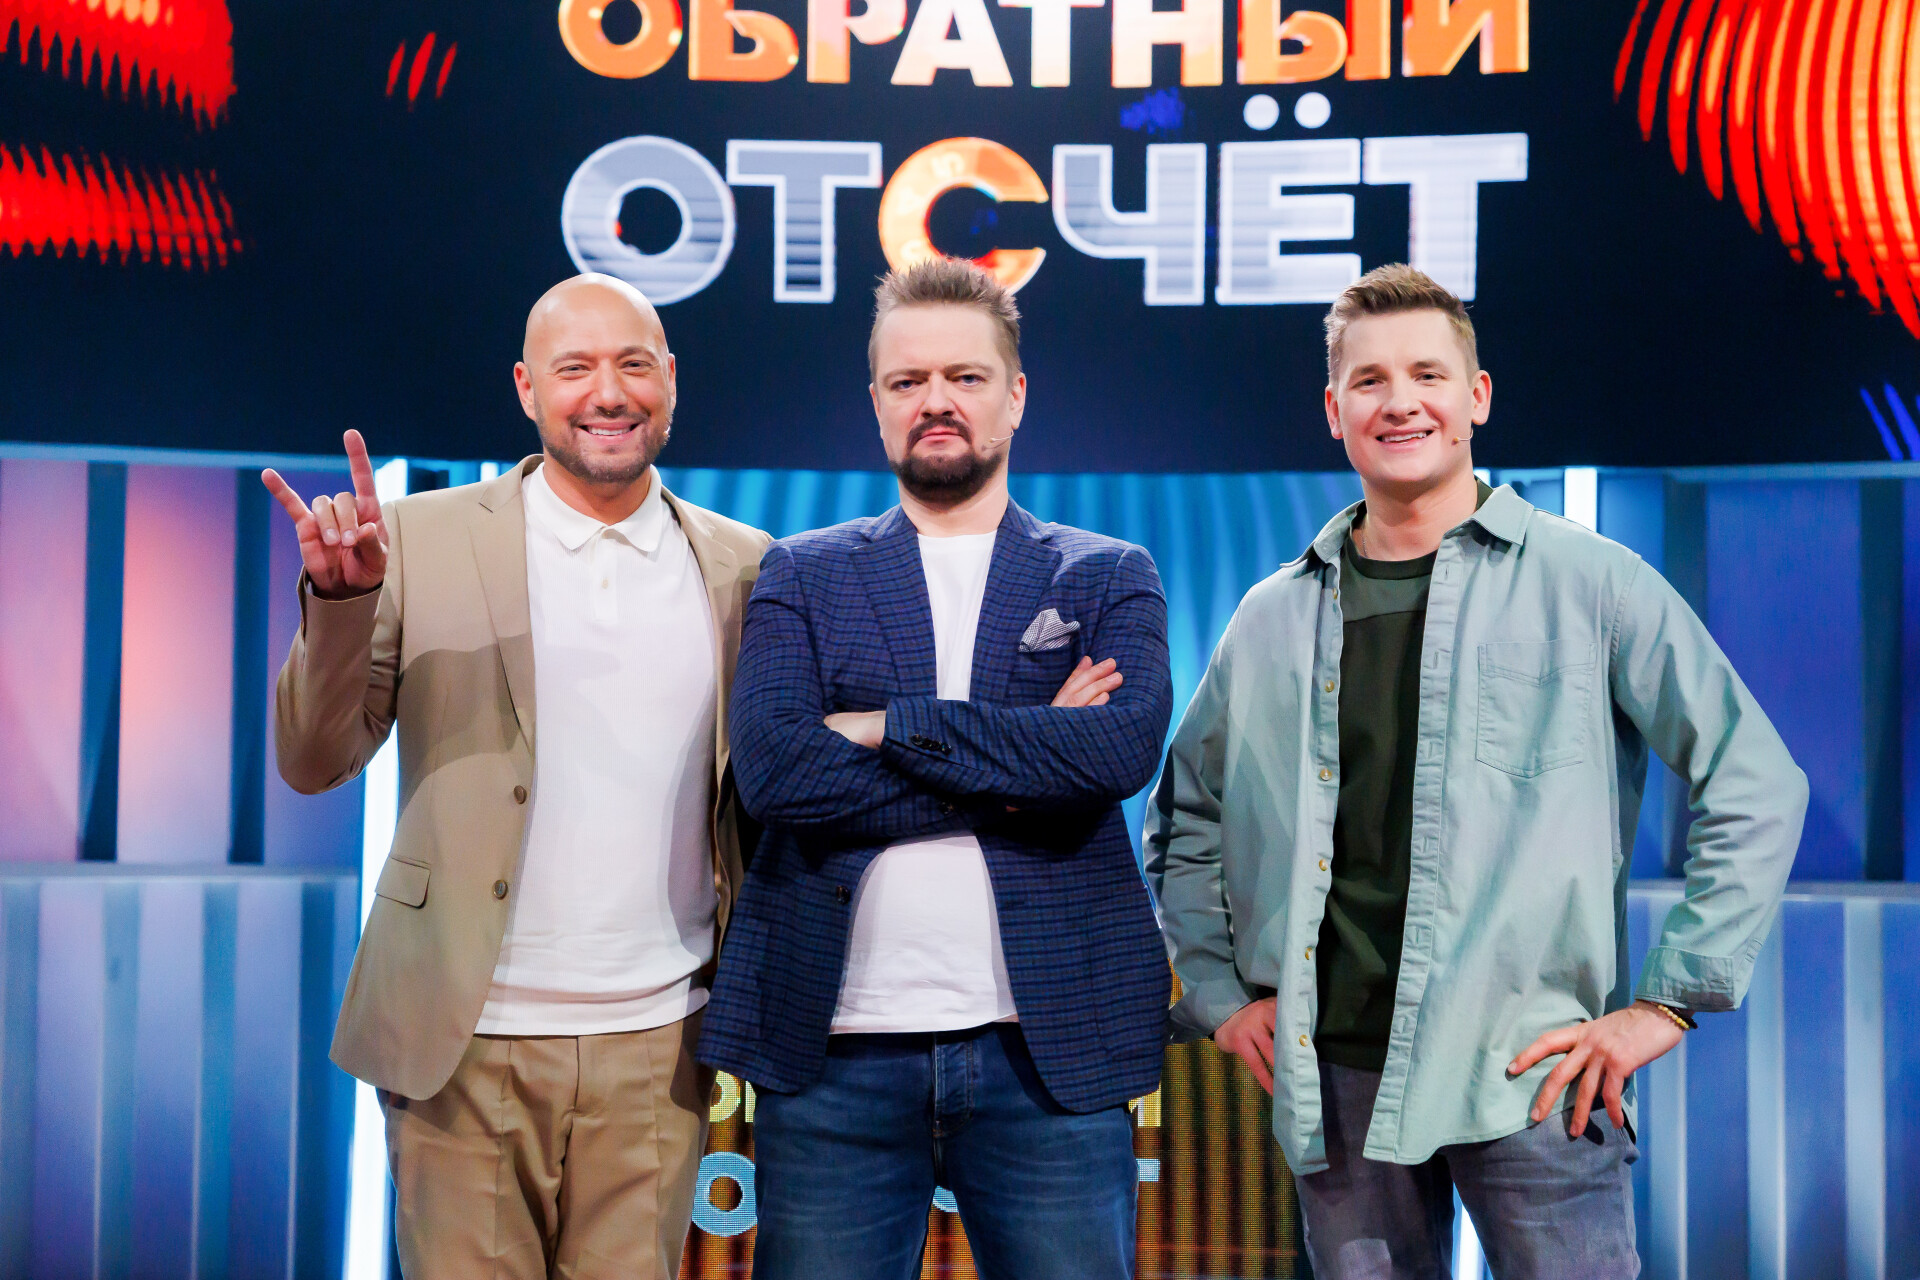 Александр Пушной и Владимир Маркони снова делят шоу на СТС